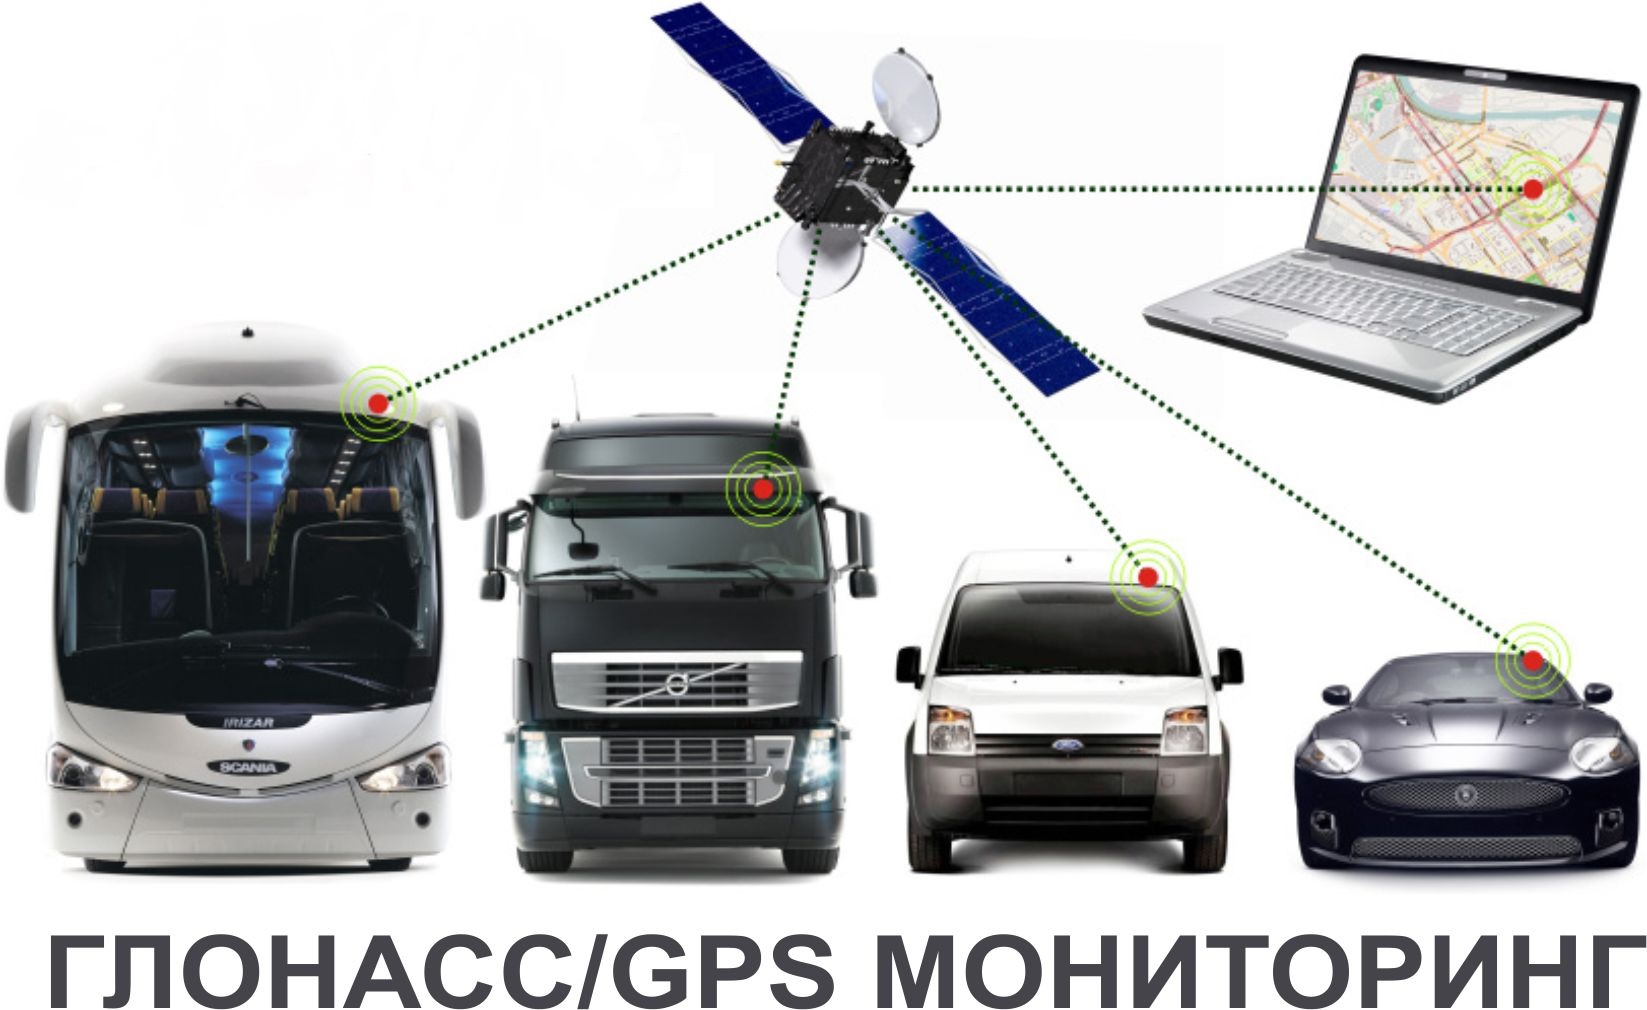 Контроль за автомобилем. Спутниковая система ГЛОНАСС/GPS. Система ГЛОНАСС/GPS мониторинга. Система мониторинга транспорта GPS ГЛОНАСС. Системы спутникового мониторинга ГЛОНАСС.